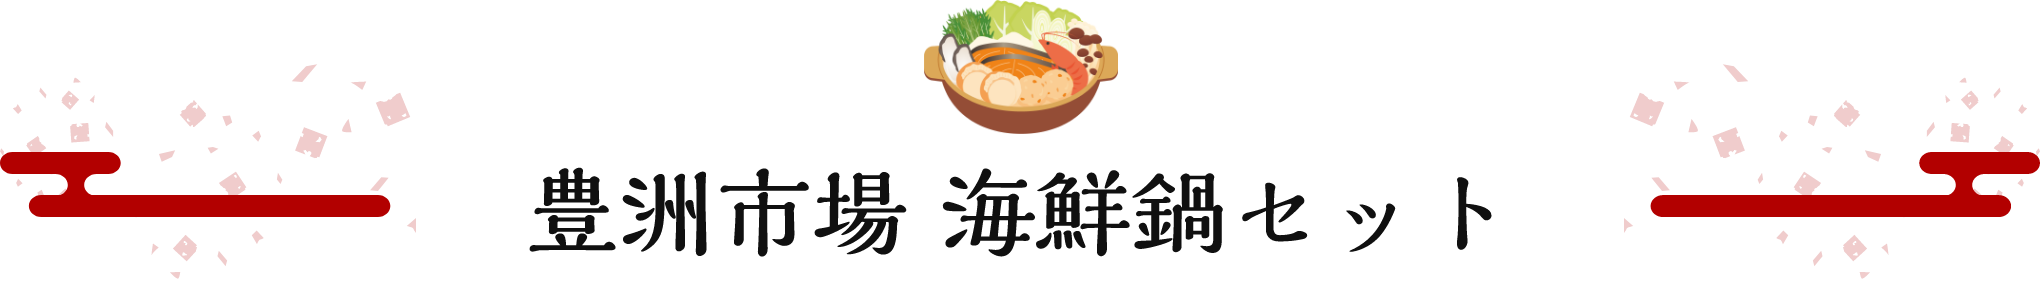 豊洲市場 海鮮鍋セット